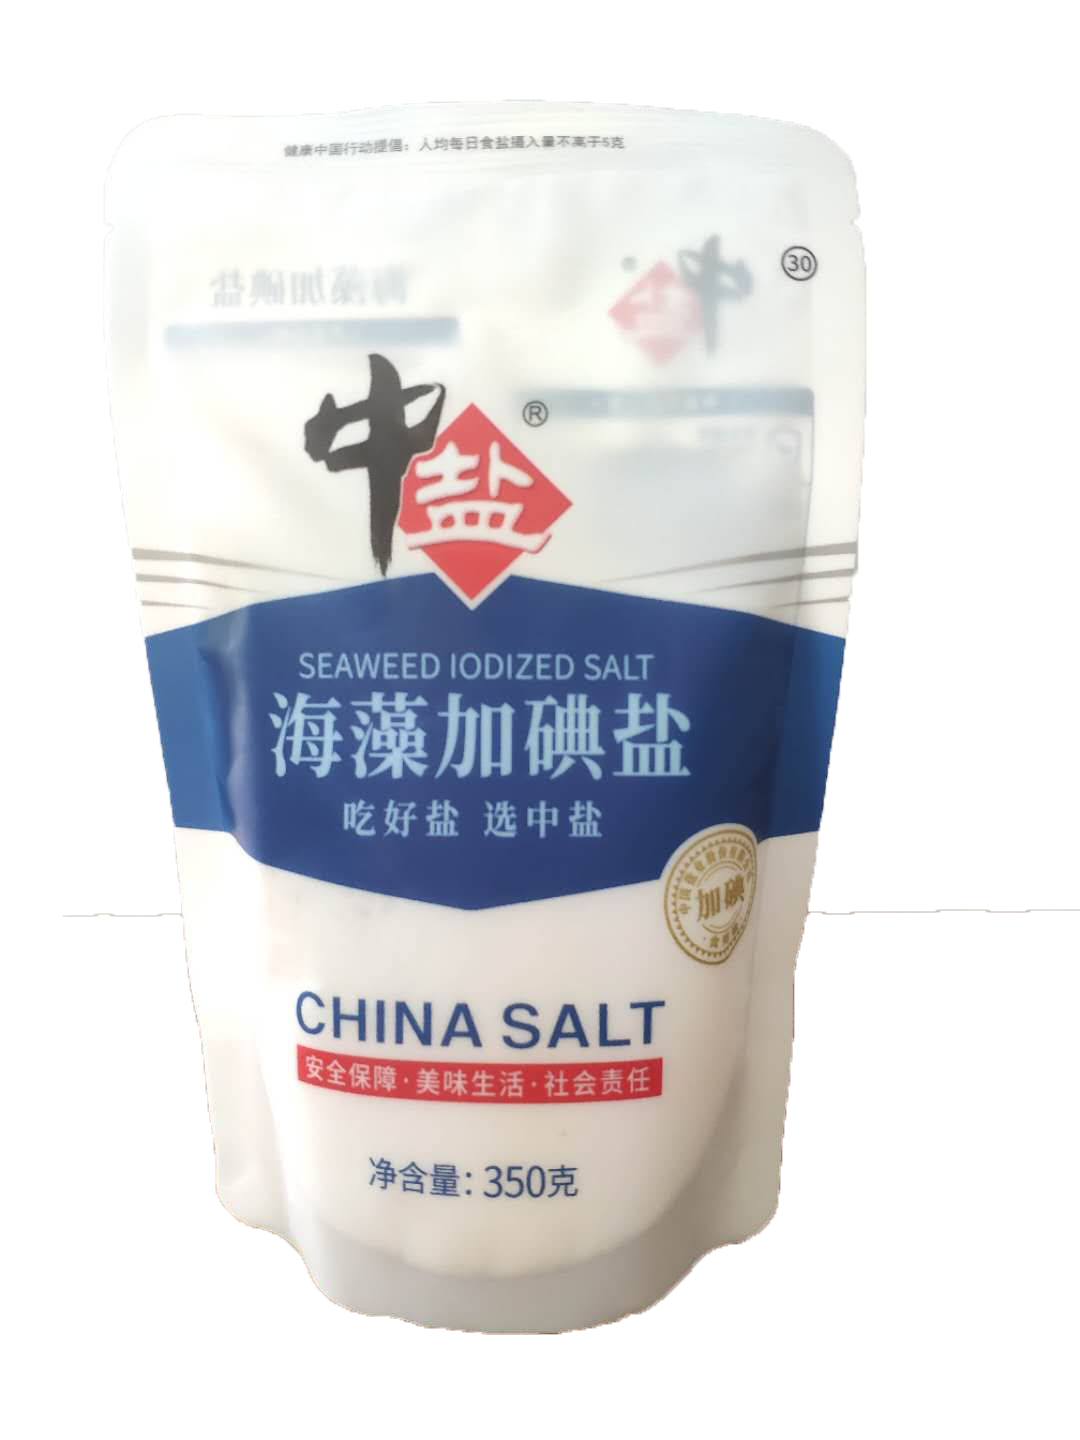 井盐、岩盐、海盐、低钠盐、无碘盐、粉盐这些特别的盐和普通食盐(精制盐)有什么区别？要怎么用更好？